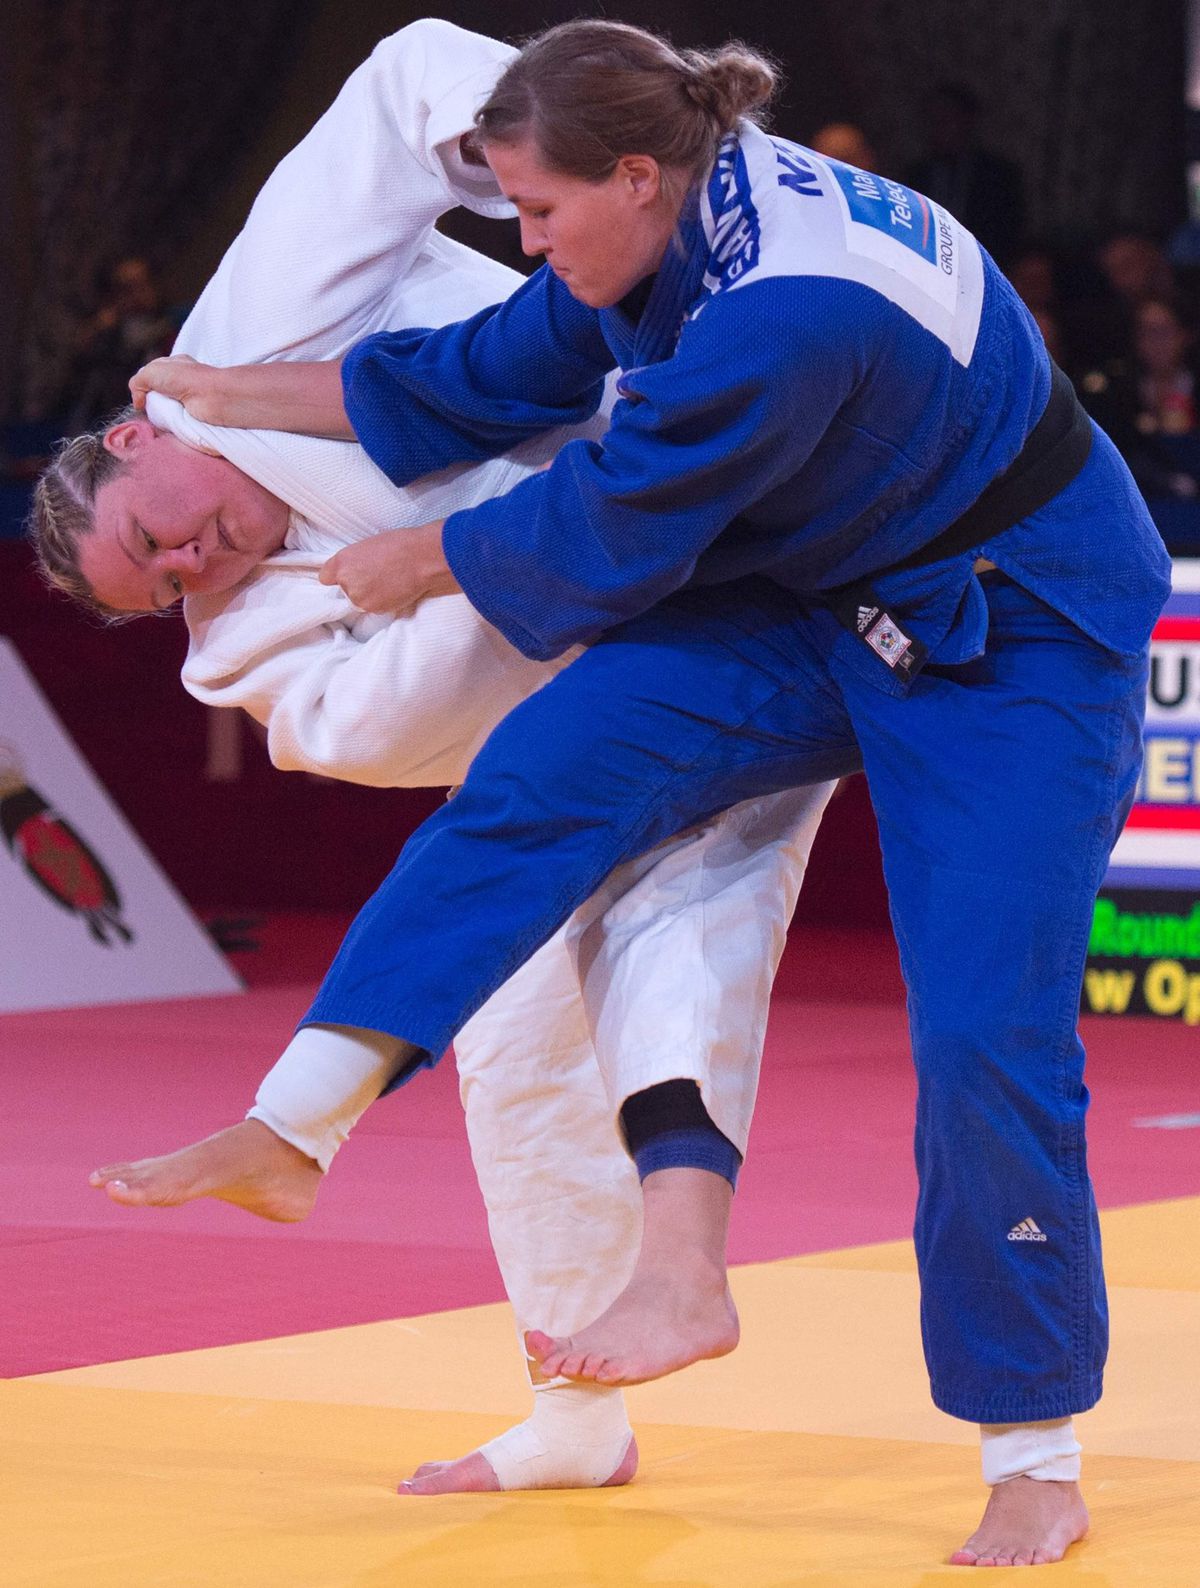 Judoka Tessie Savelkouls mag alleen nog strijden om brons in WK open klasse